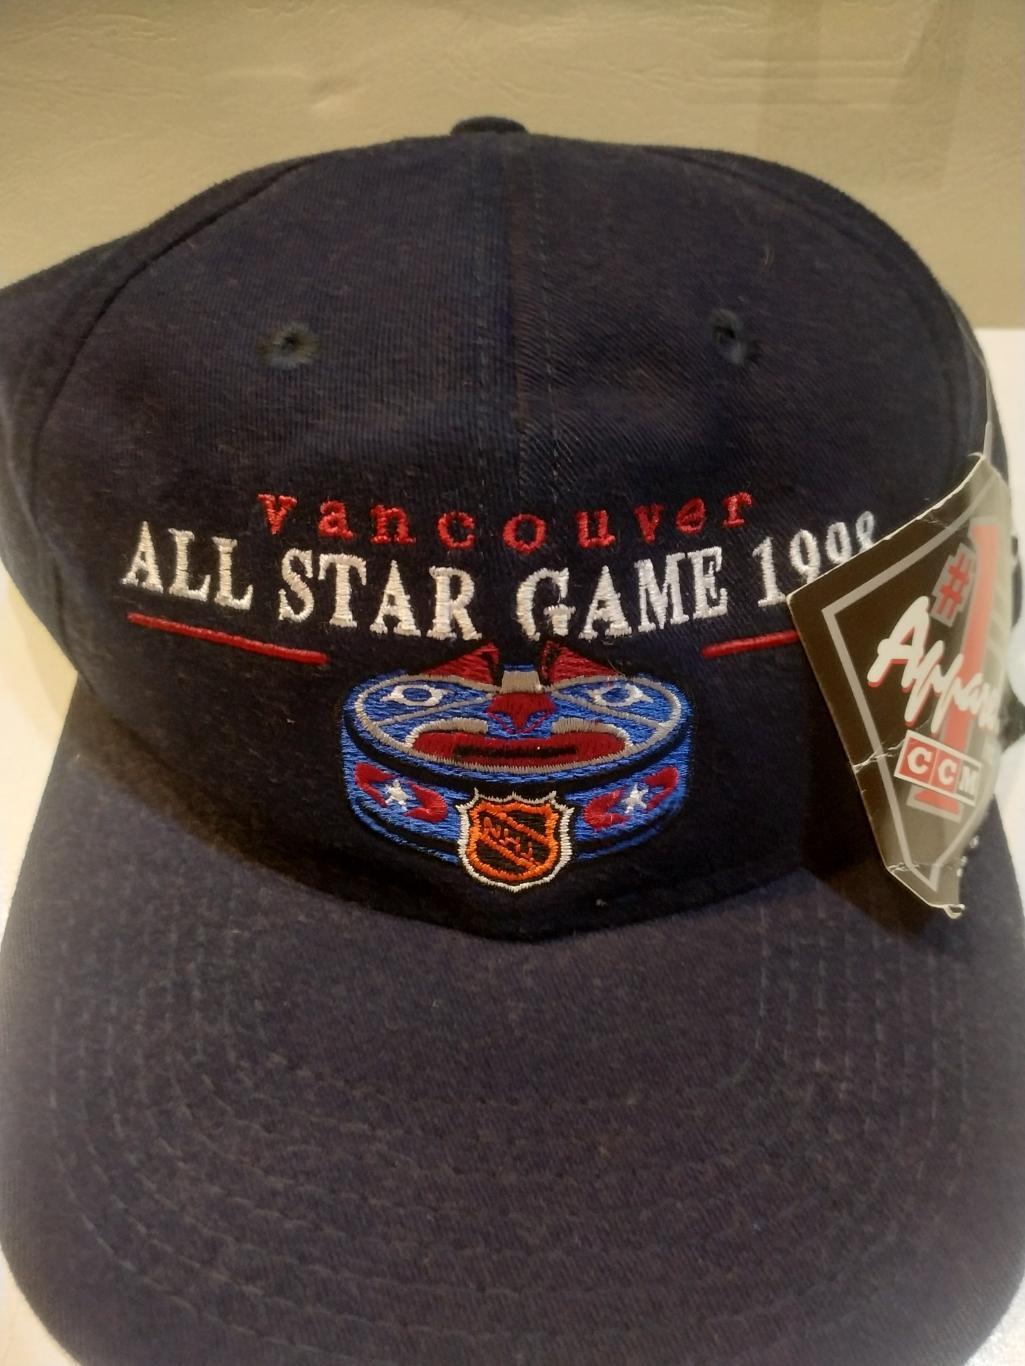 ХОККЕЙ БЕЙСБОЛКА МАТЧ ЗВЕЗД ВАНКУВЕР НХЛ 1998 NHL ALL STAR GAME VANCOUVER 2